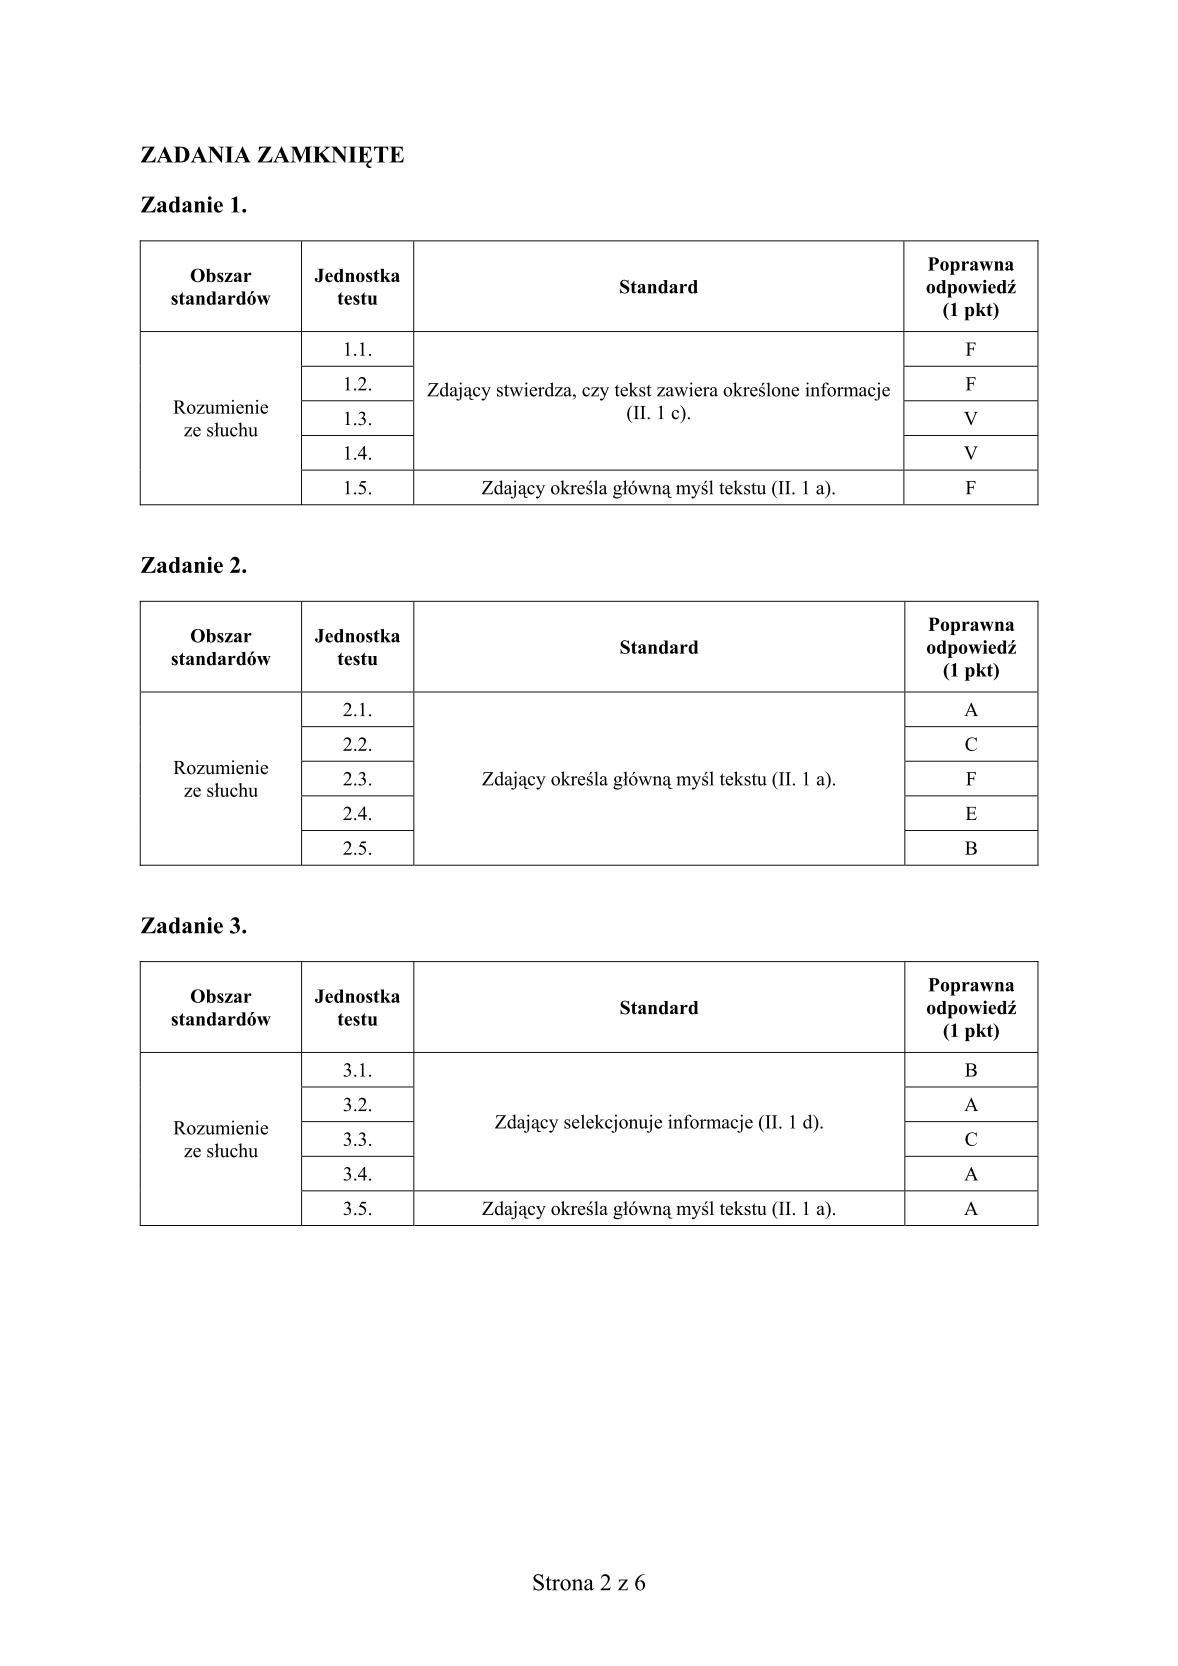 odpowiedzi-francuski-poziom-podstawowy-matura-2014-str.2